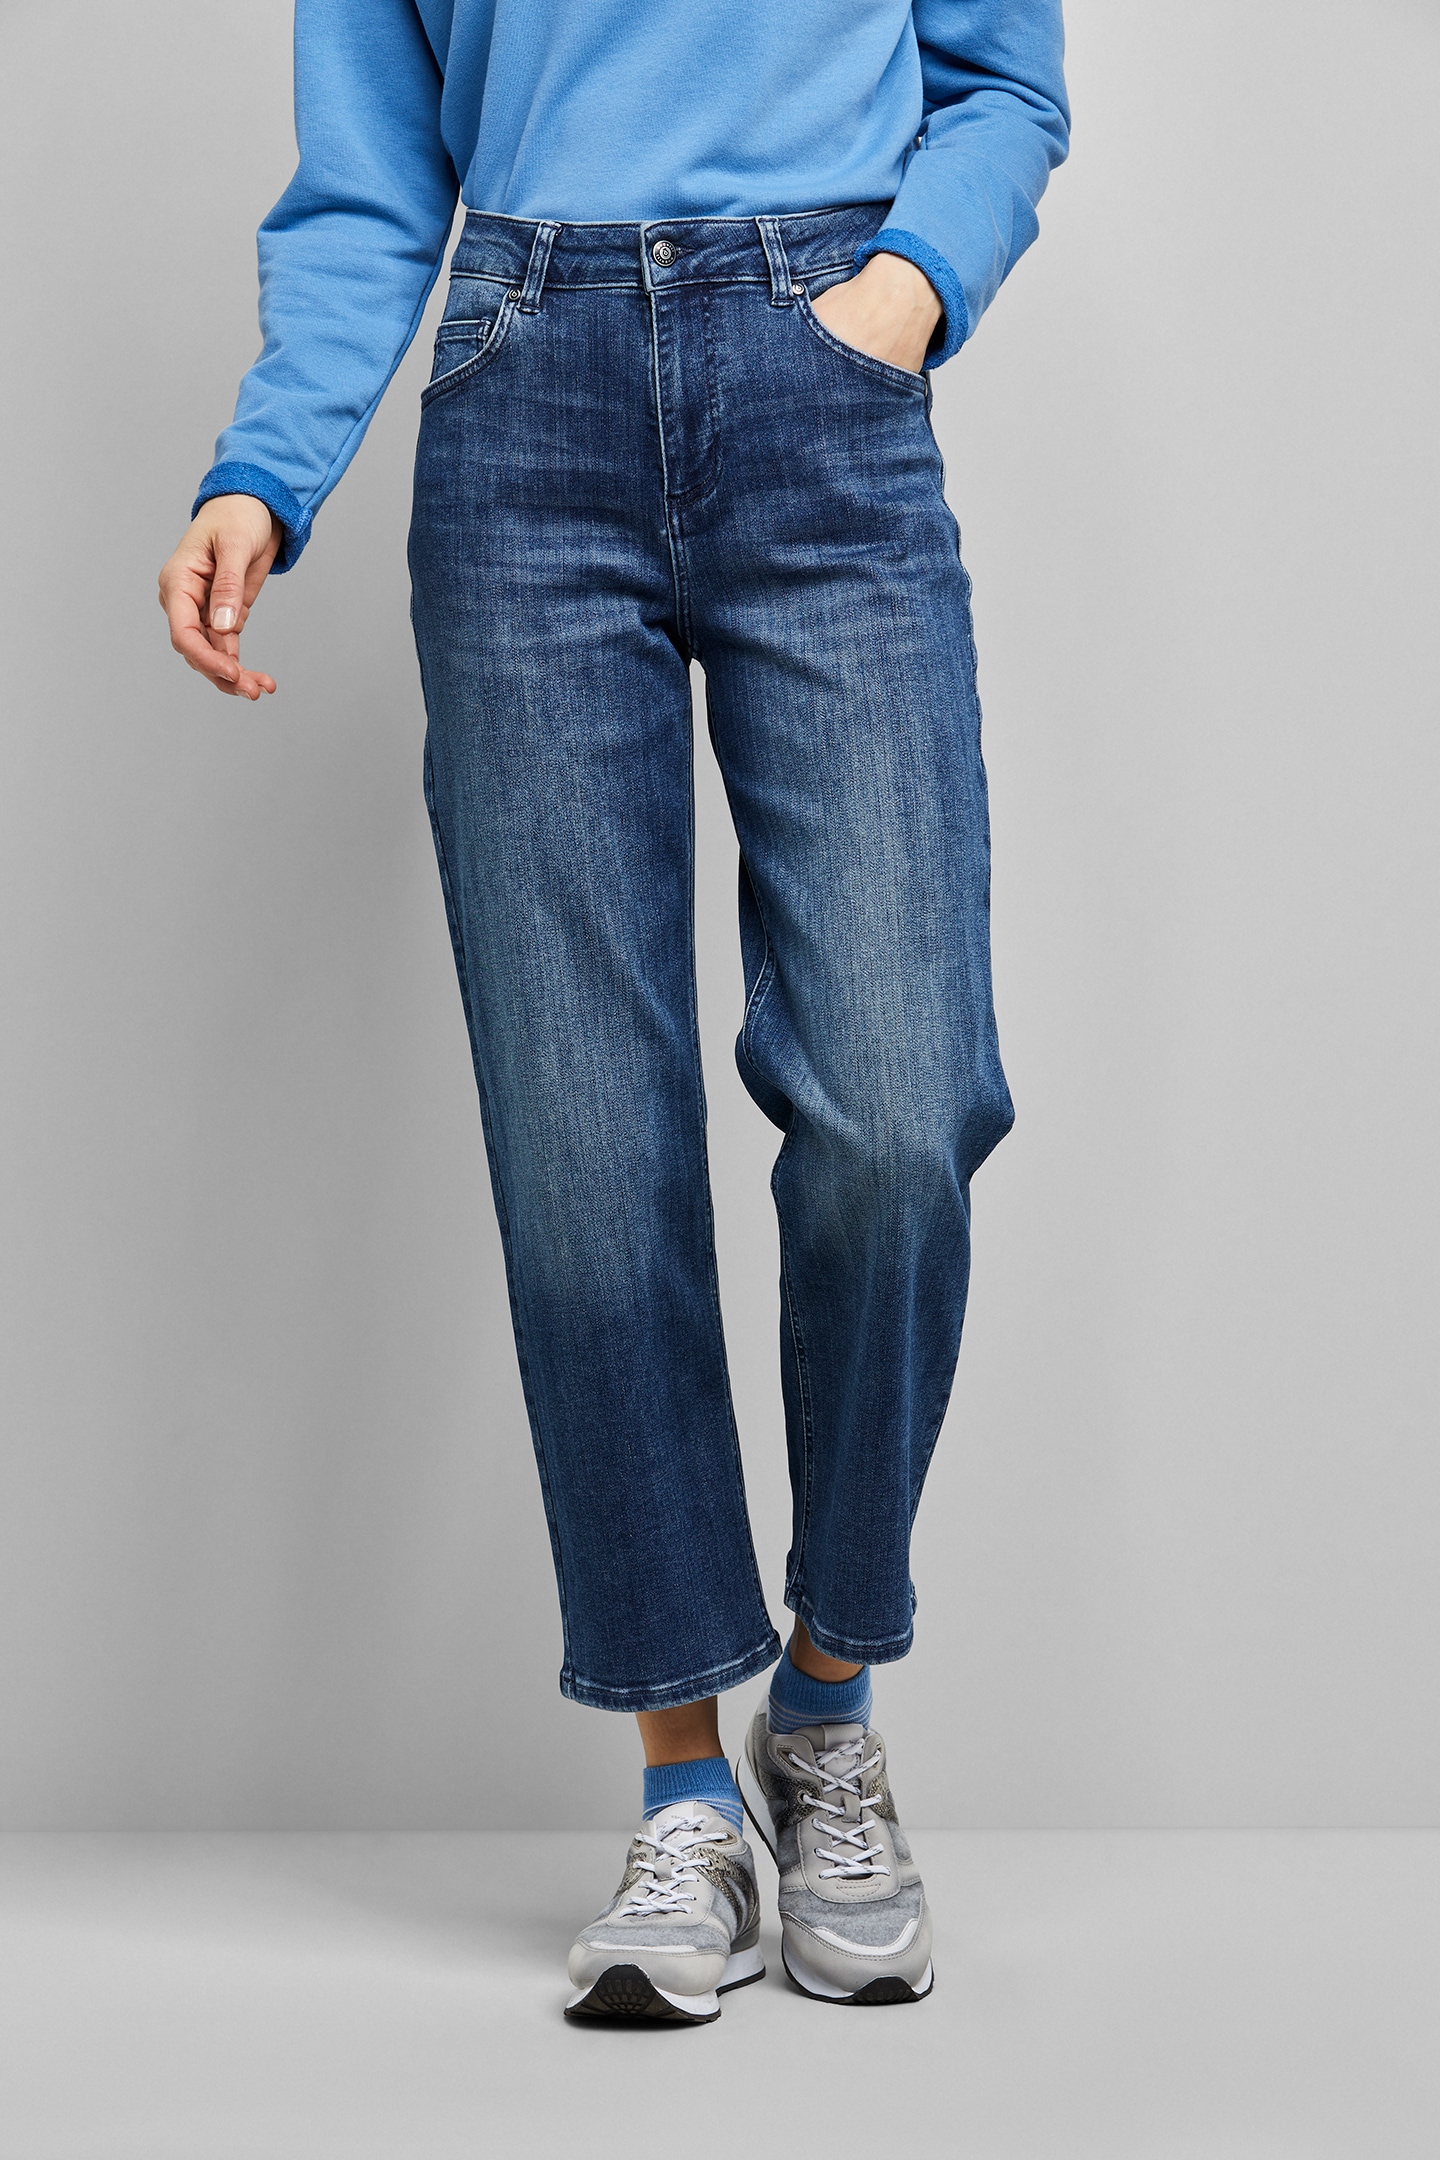 Baumwollware aus bugatti I\'m 5-Pocket-Jeans, walking | Relax online elastischer in Fit